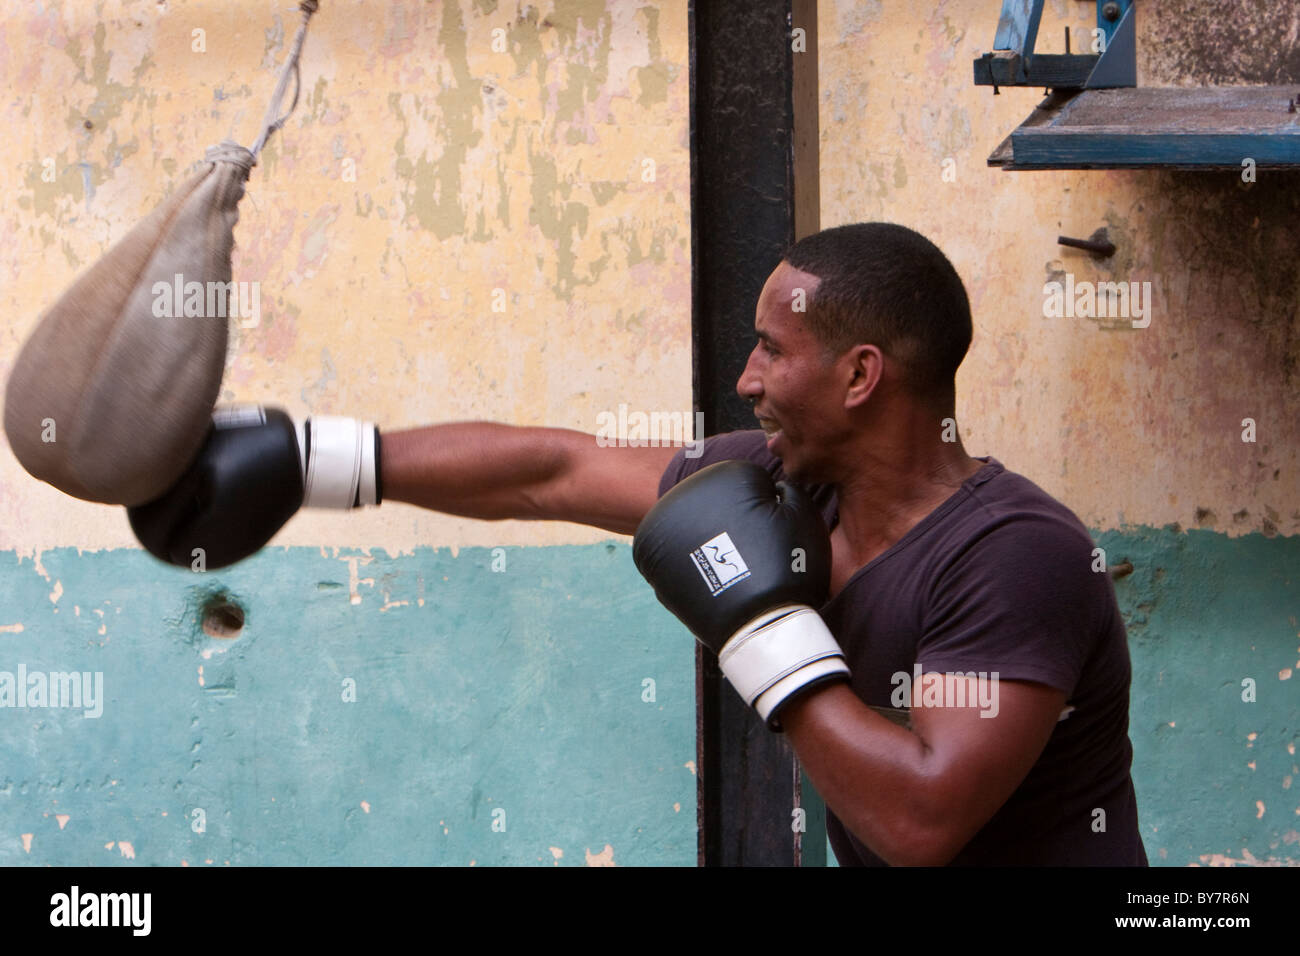 Cuba, La Habana. Boxer afrocubano practicando con una bolsa de boxeo. Foto de stock